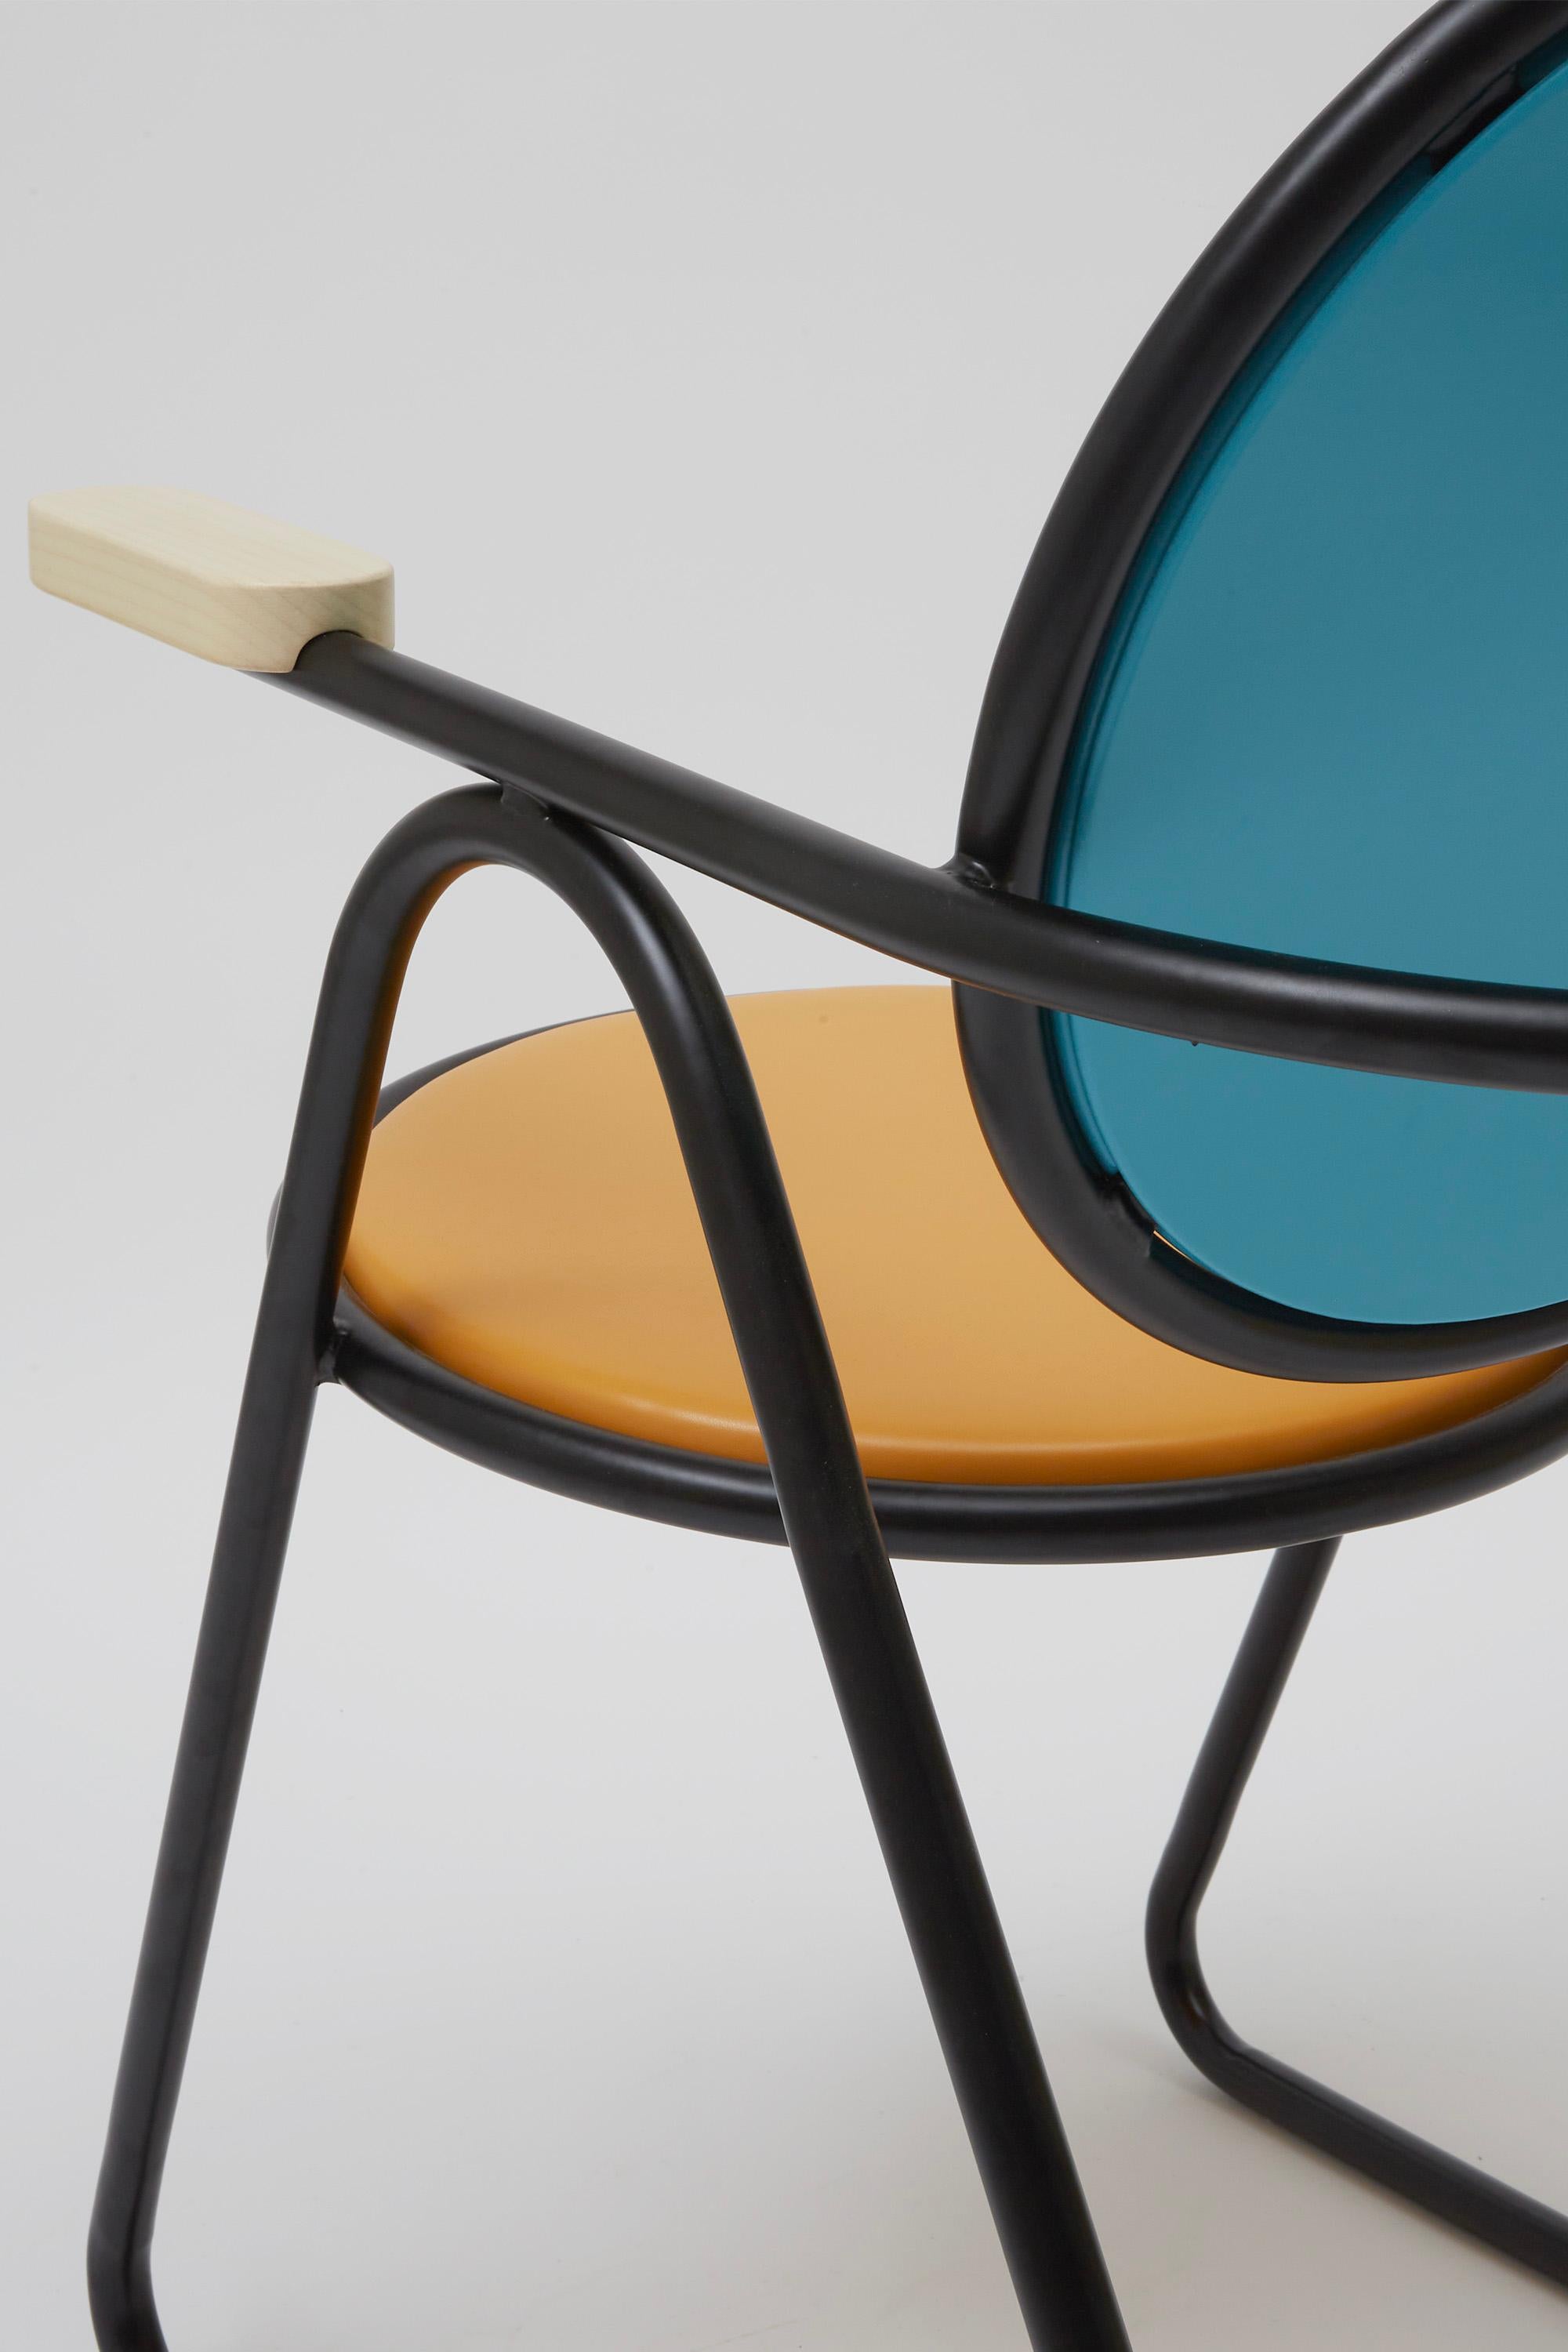 U-Disk Easy Chair, Black, Orange & Light Blue For Sale 2